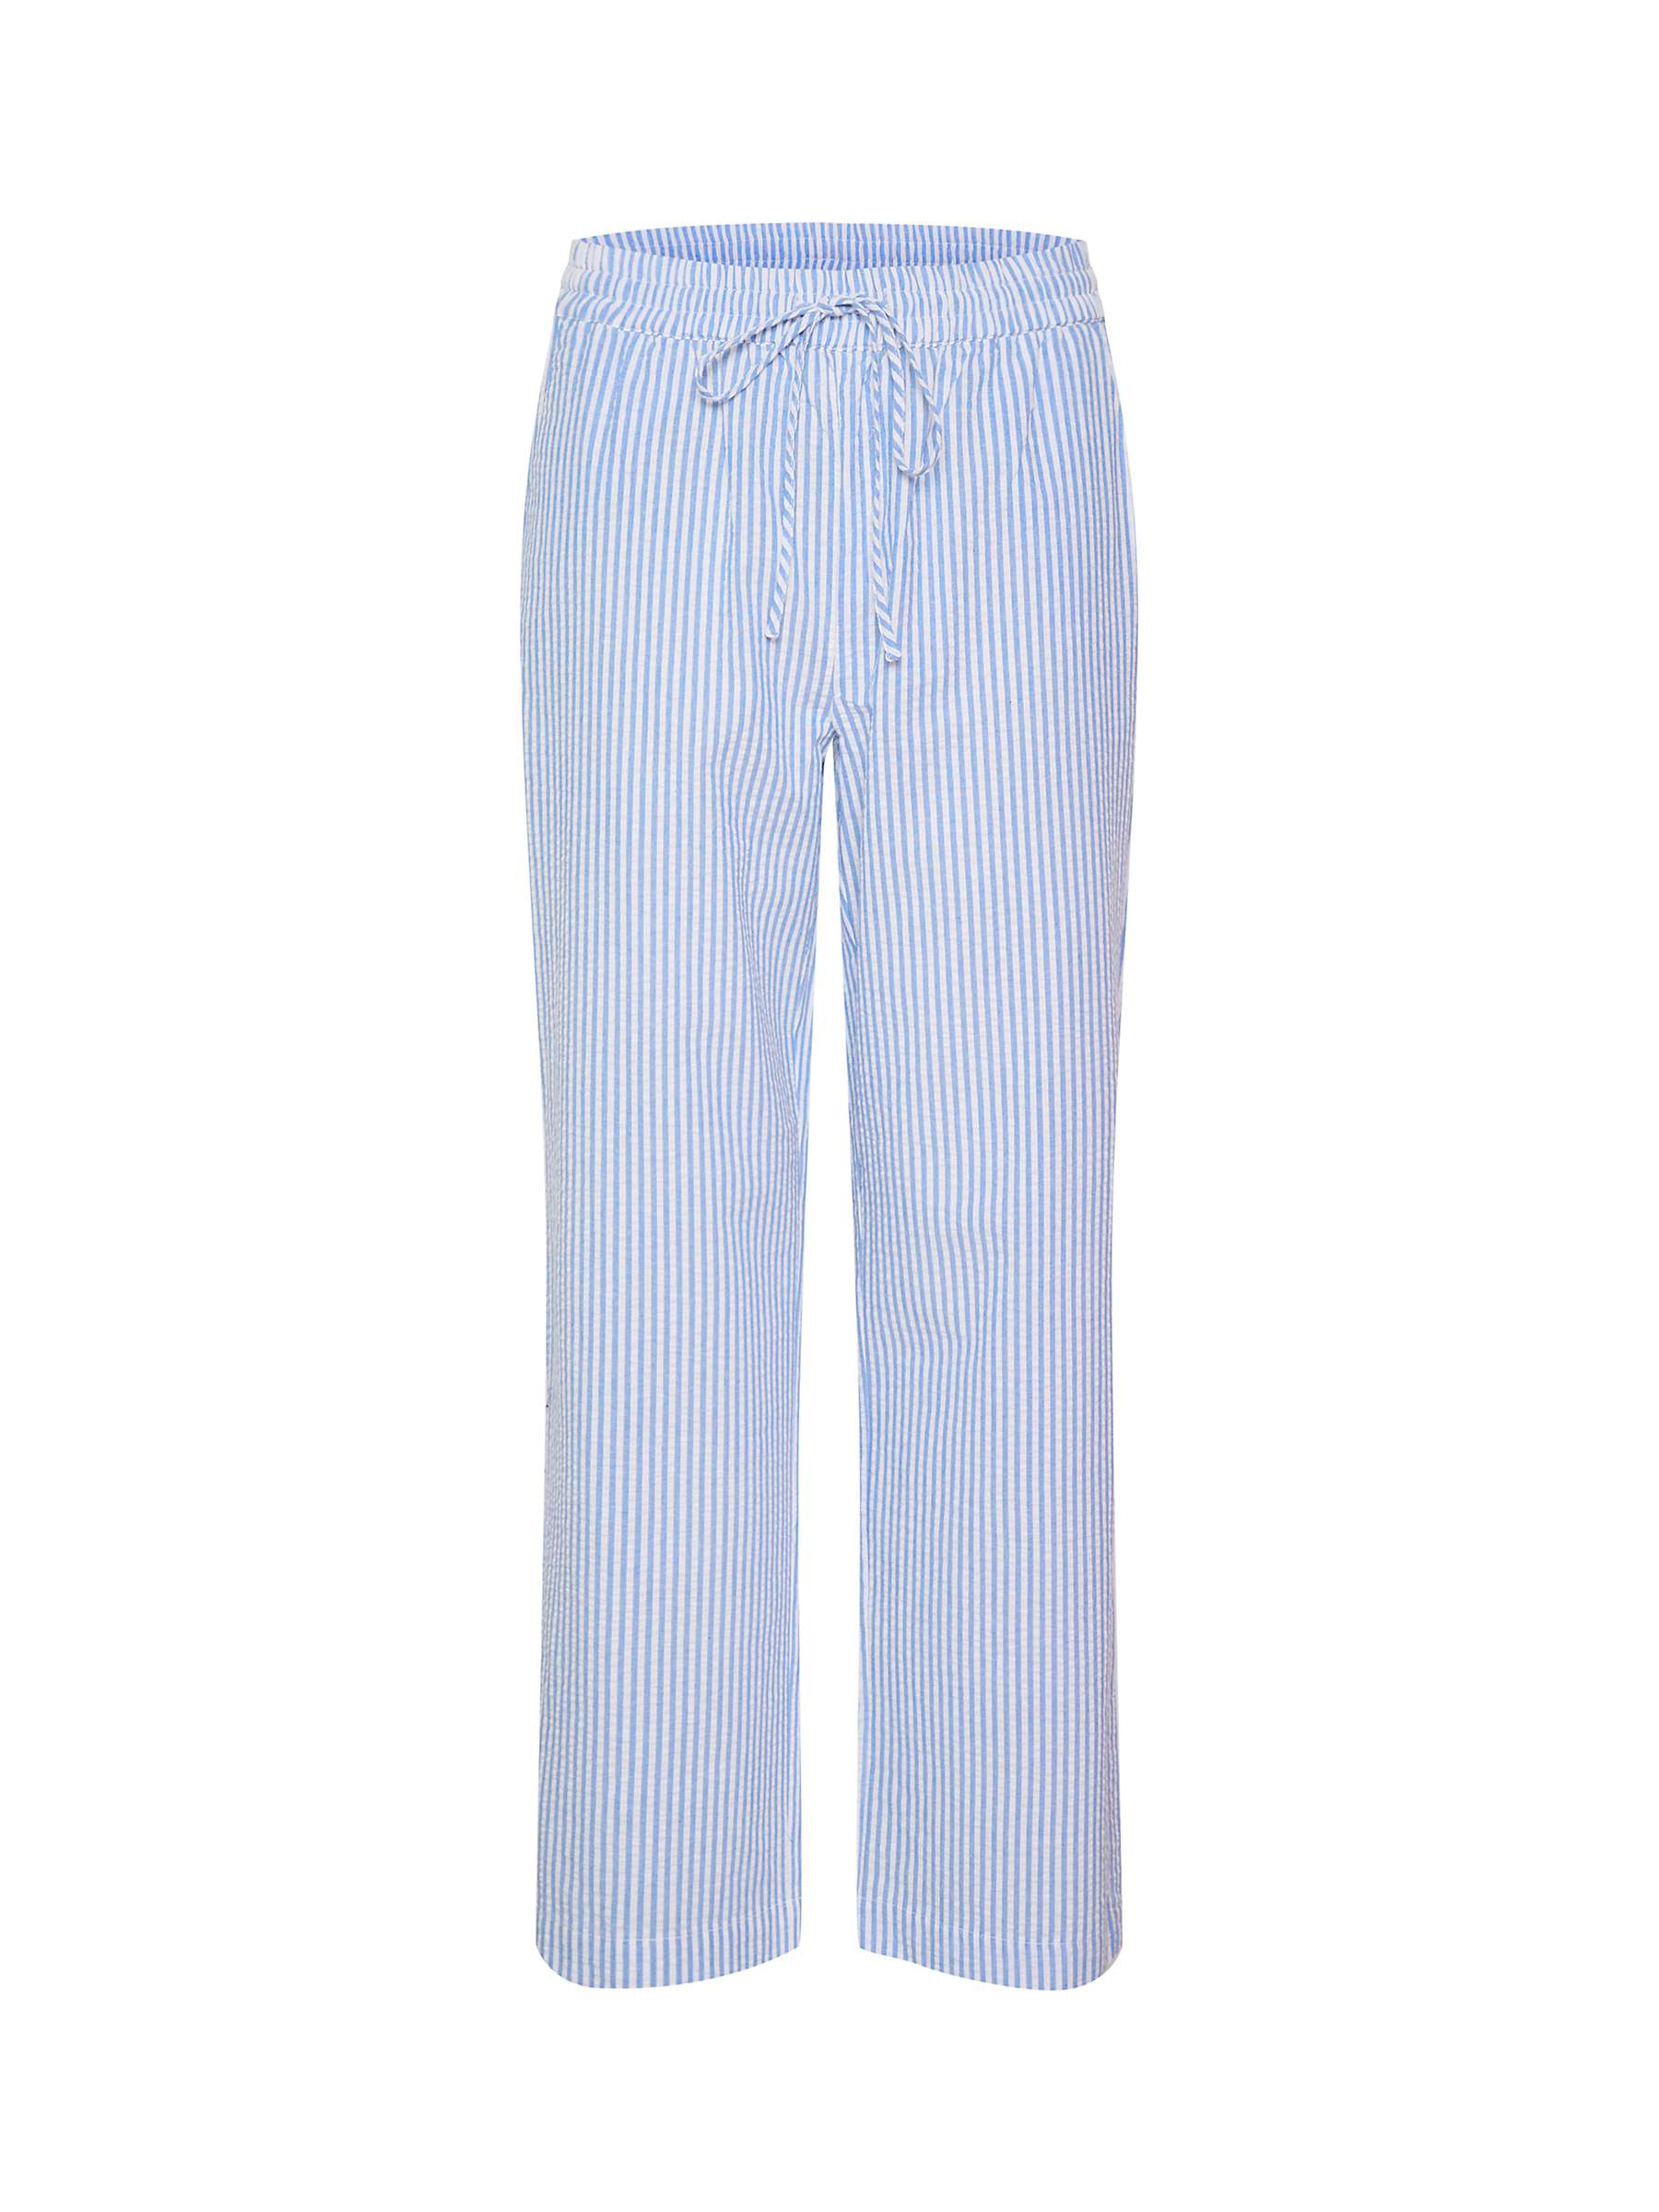 Buy Saint Tropez Elmiko Elastic Waist Casual Trousers, Palace Blue Online at johnlewis.com